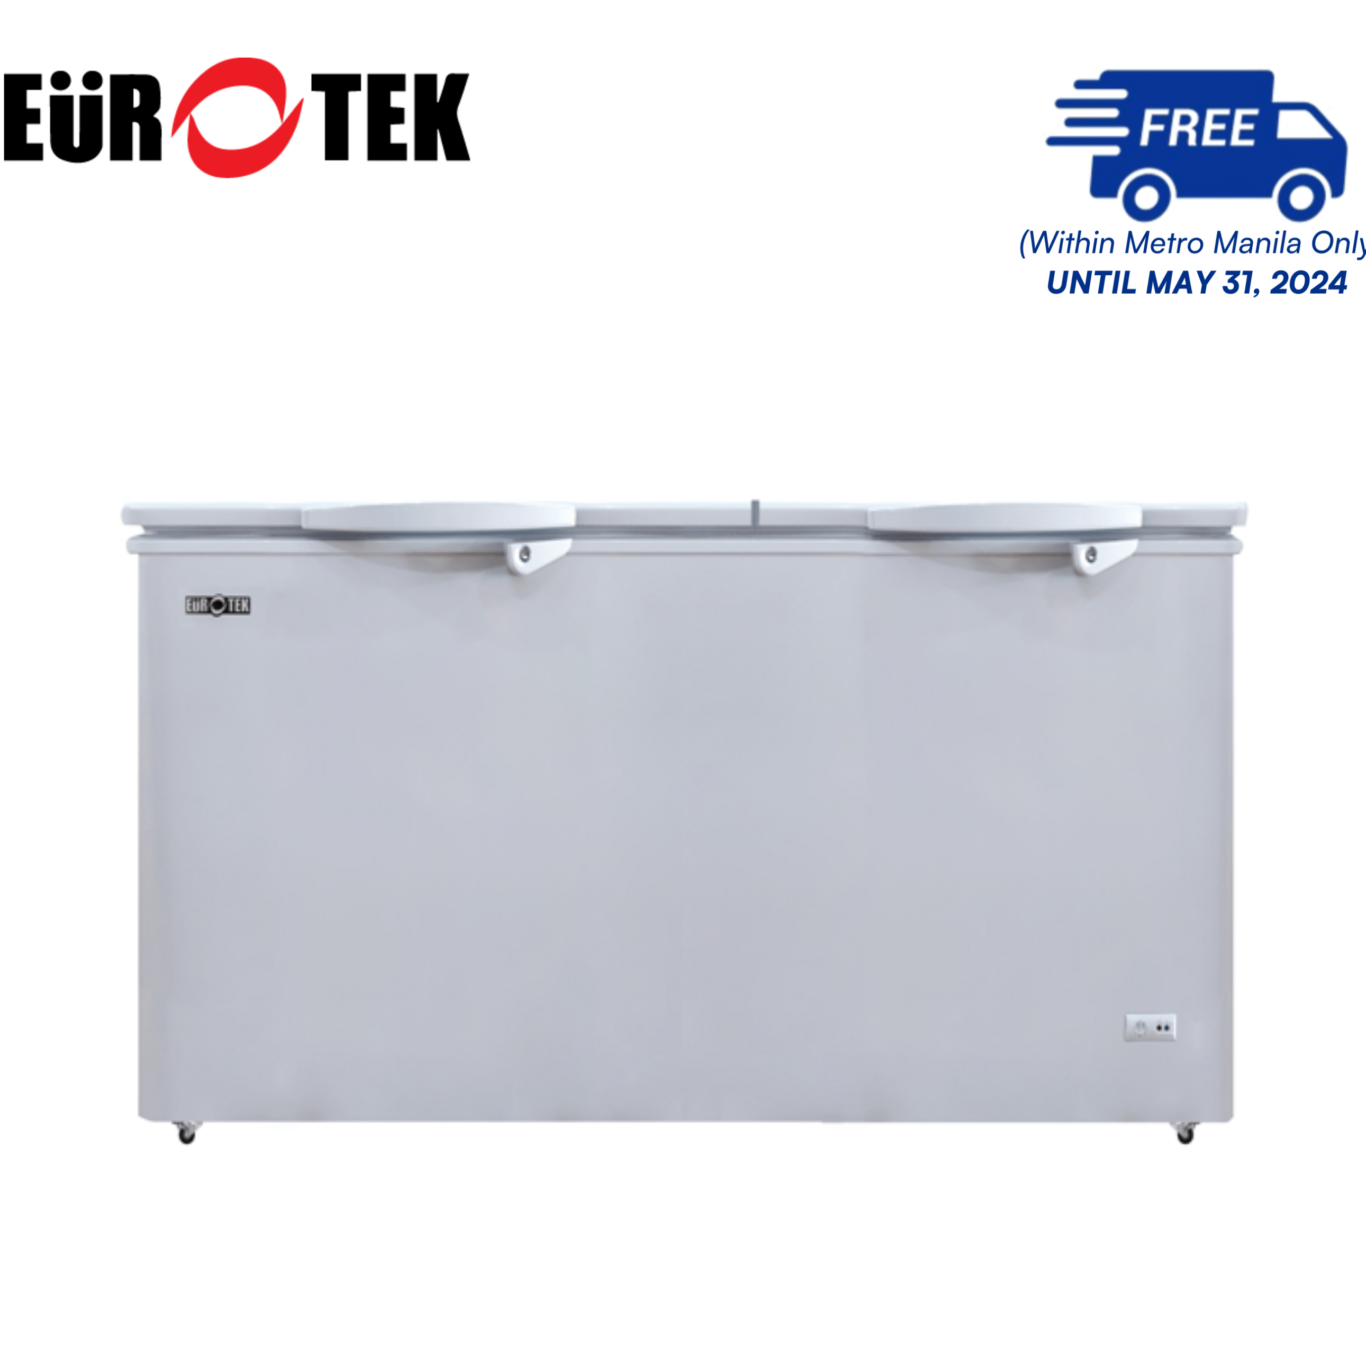 Eurotek ECF560GR